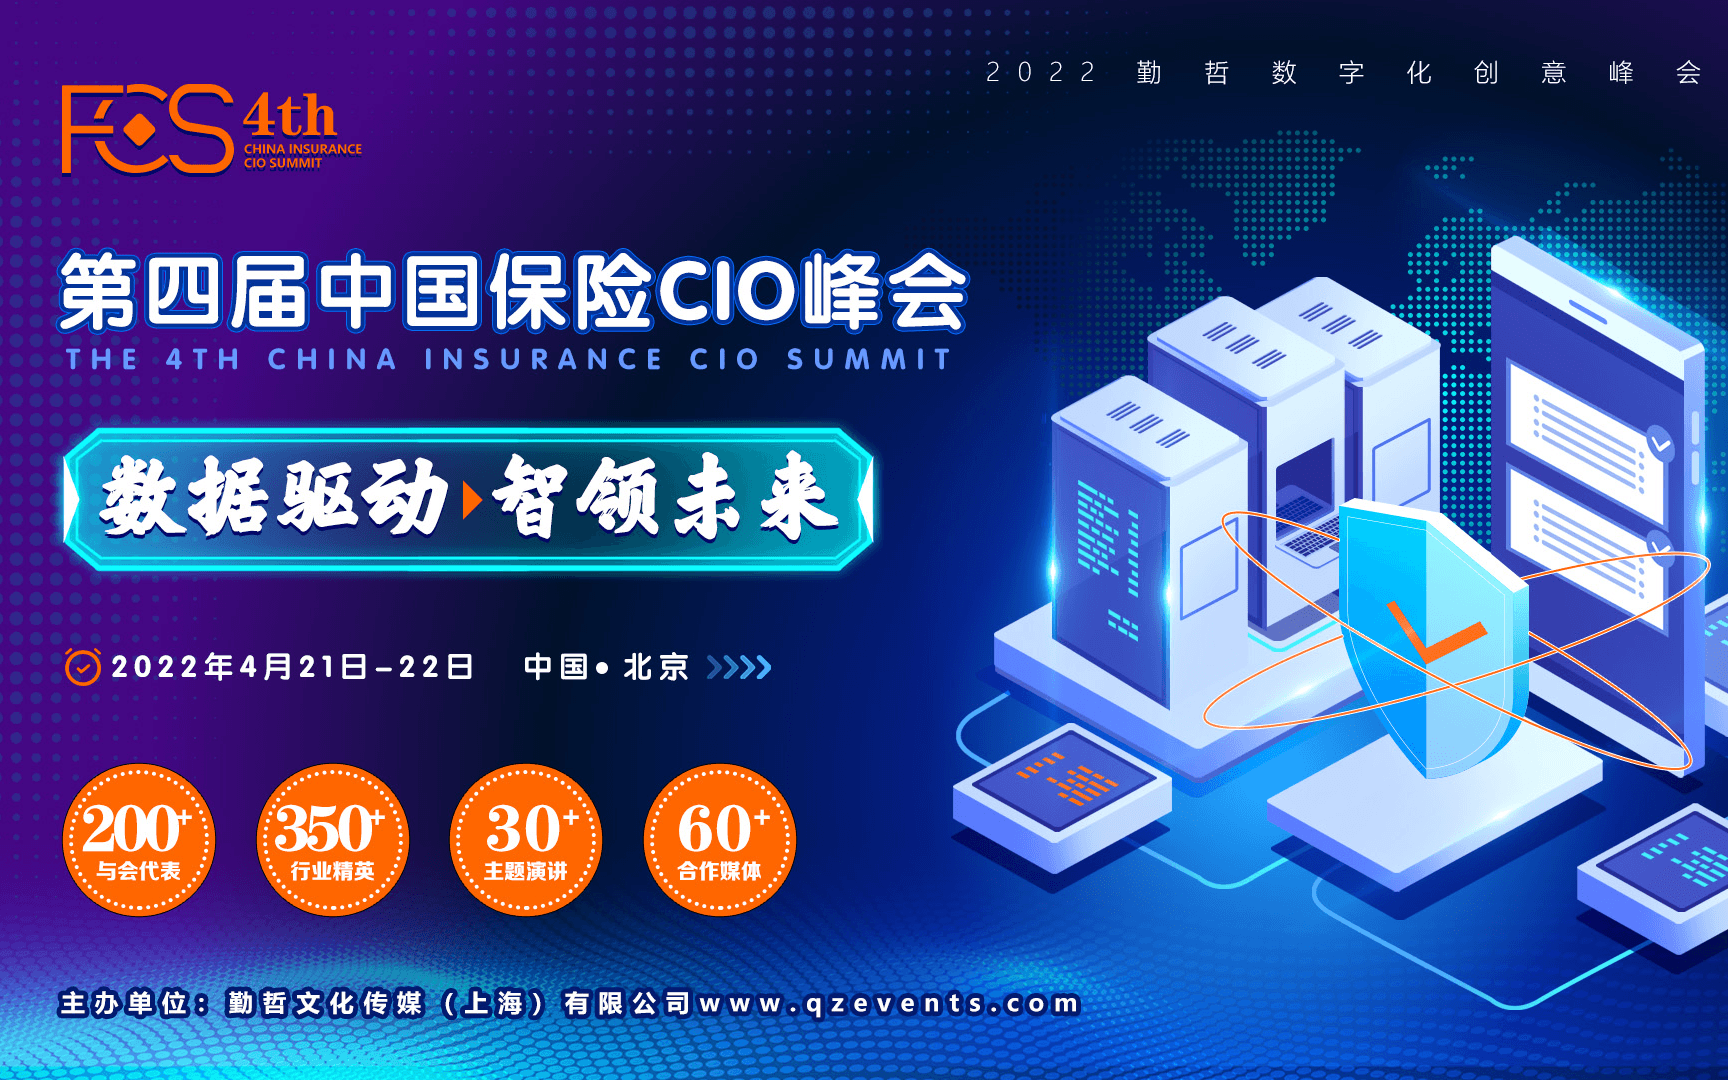 FCS 2022第四屆中國保險數字科技年會